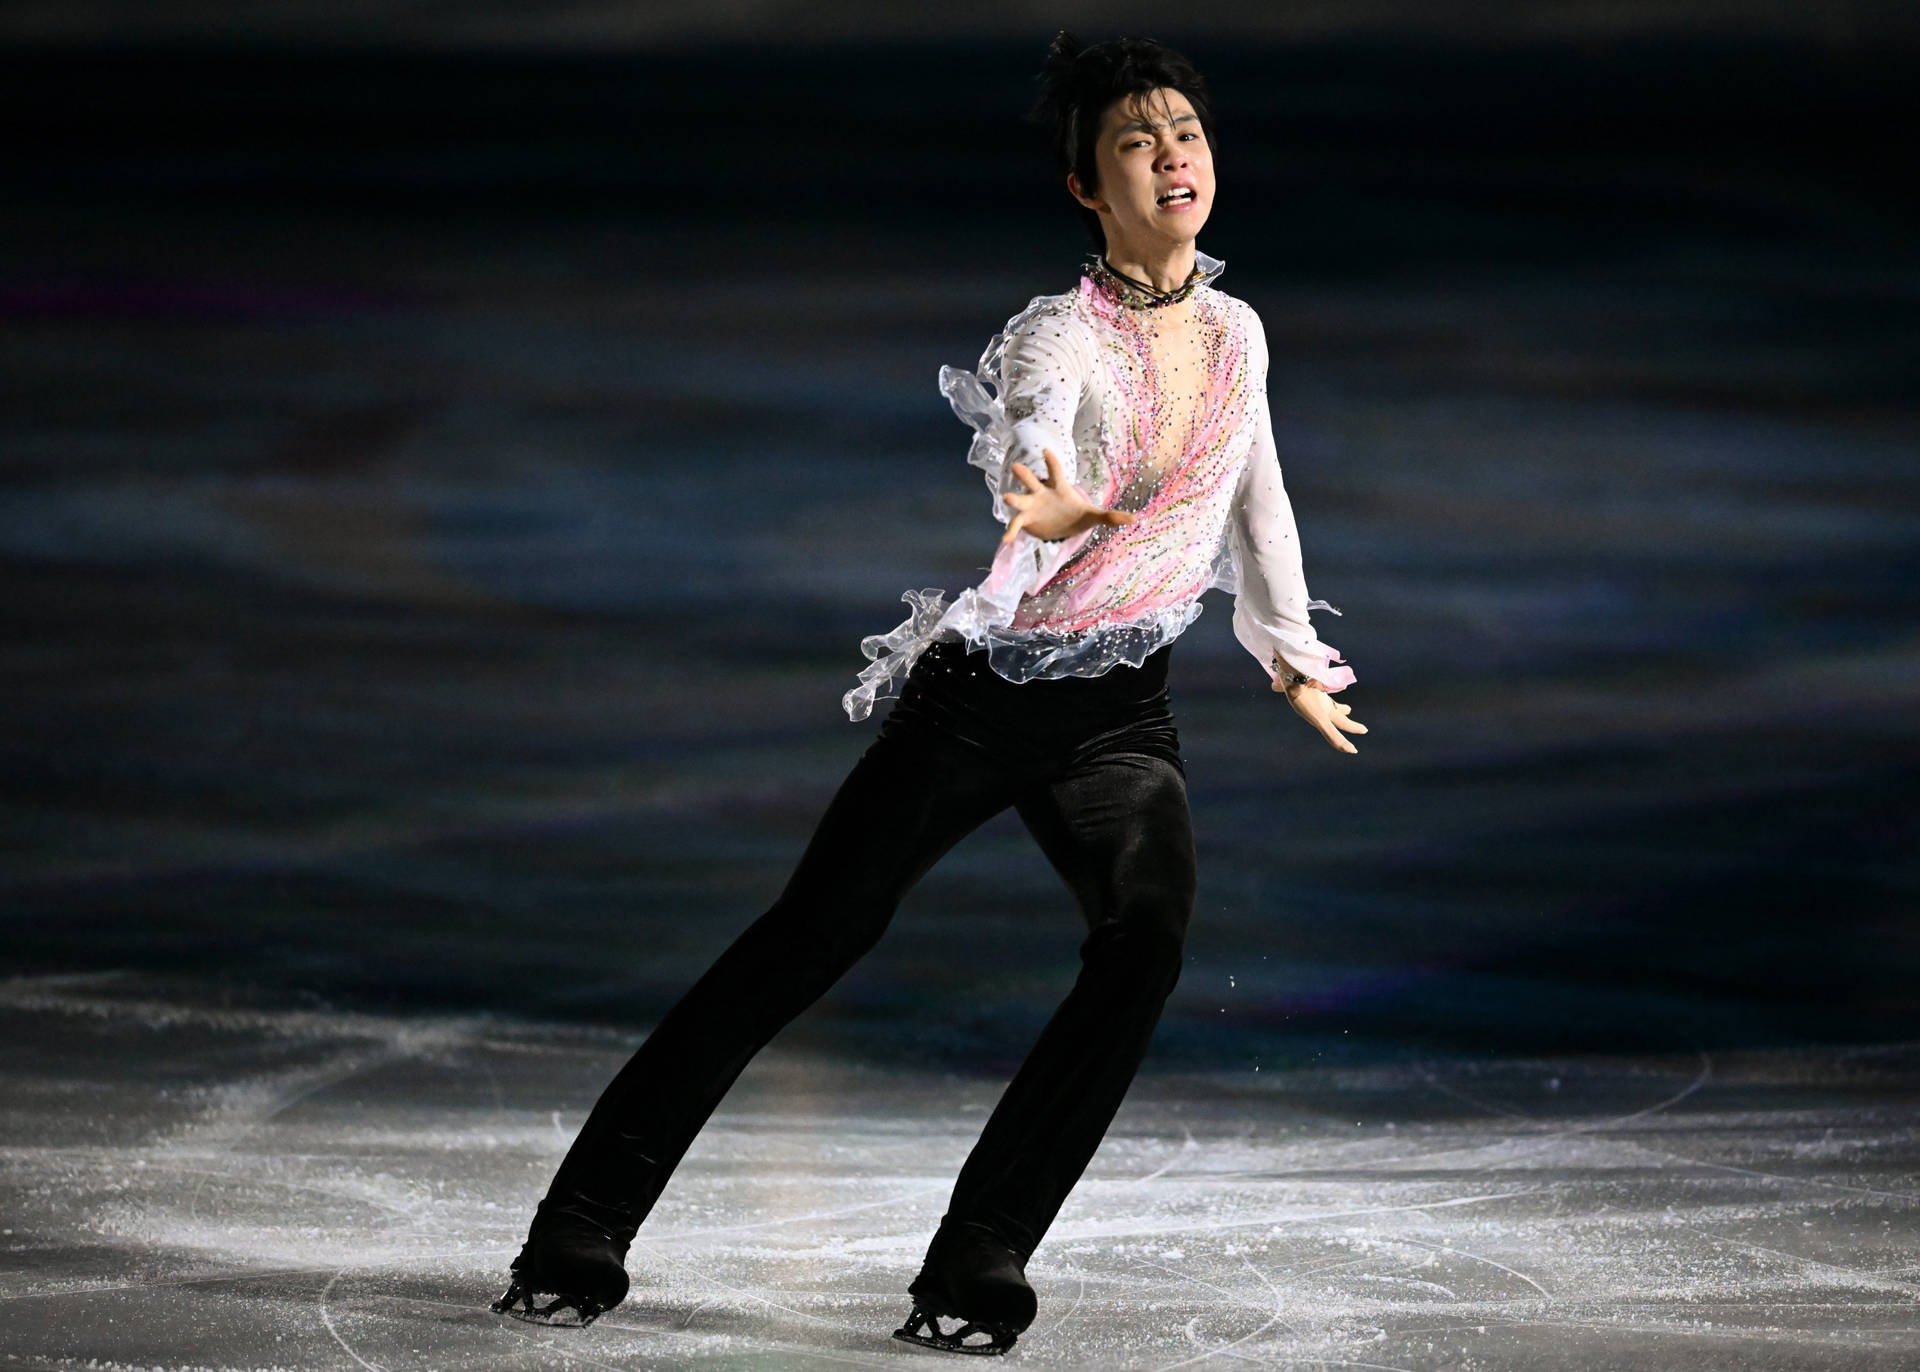 Atletajaponés De Patinaje Artístico Yuzuru Hanyu En Los Juegos Olímpicos De Invierno. Fondo de pantalla